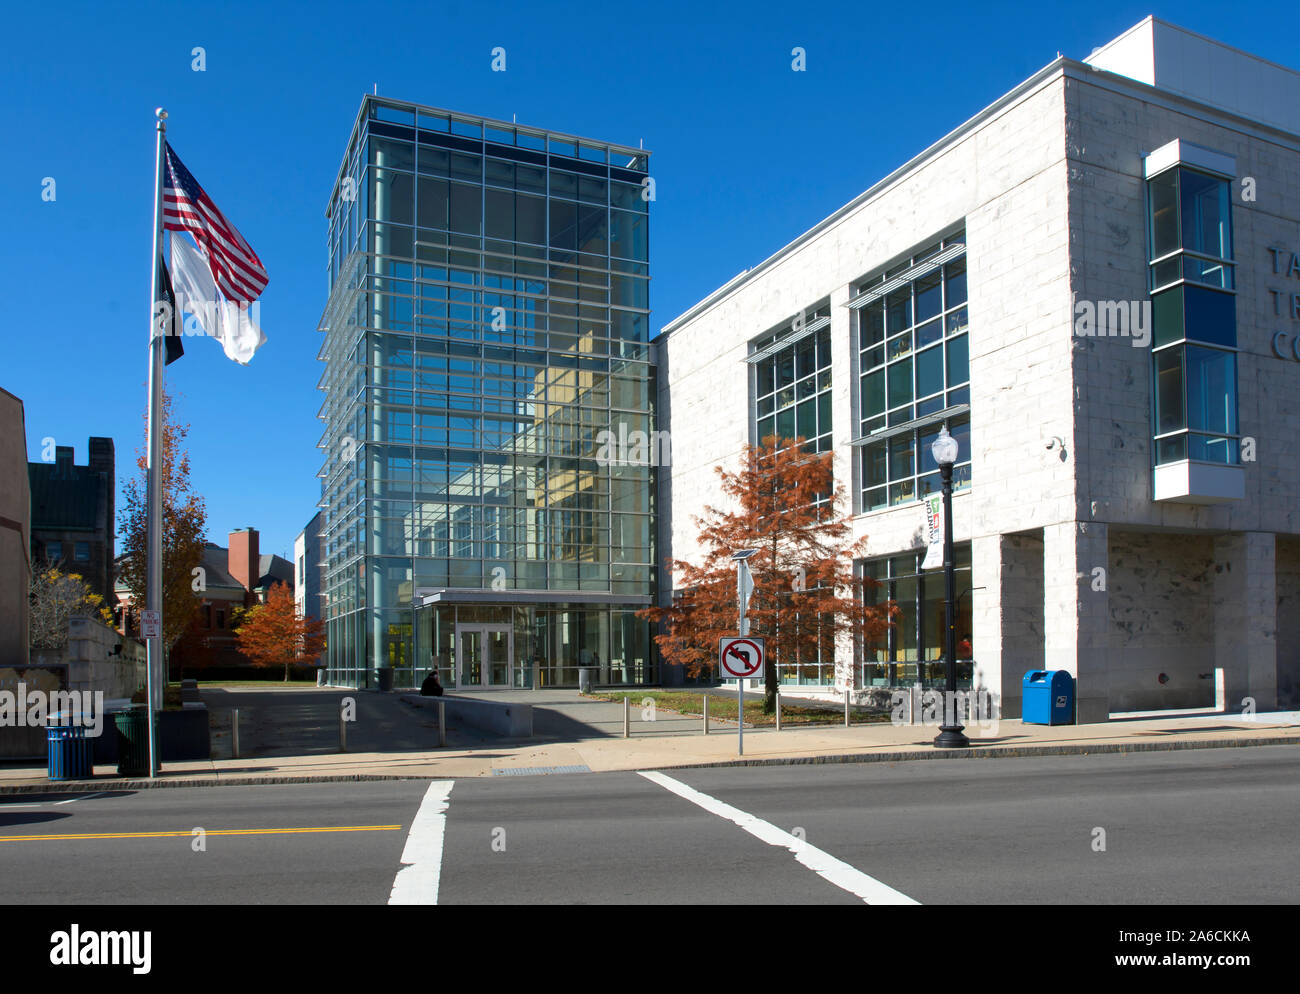 Bristol Comté Cour de première instance entrée - Taunton, Massachusetts, USA Banque D'Images